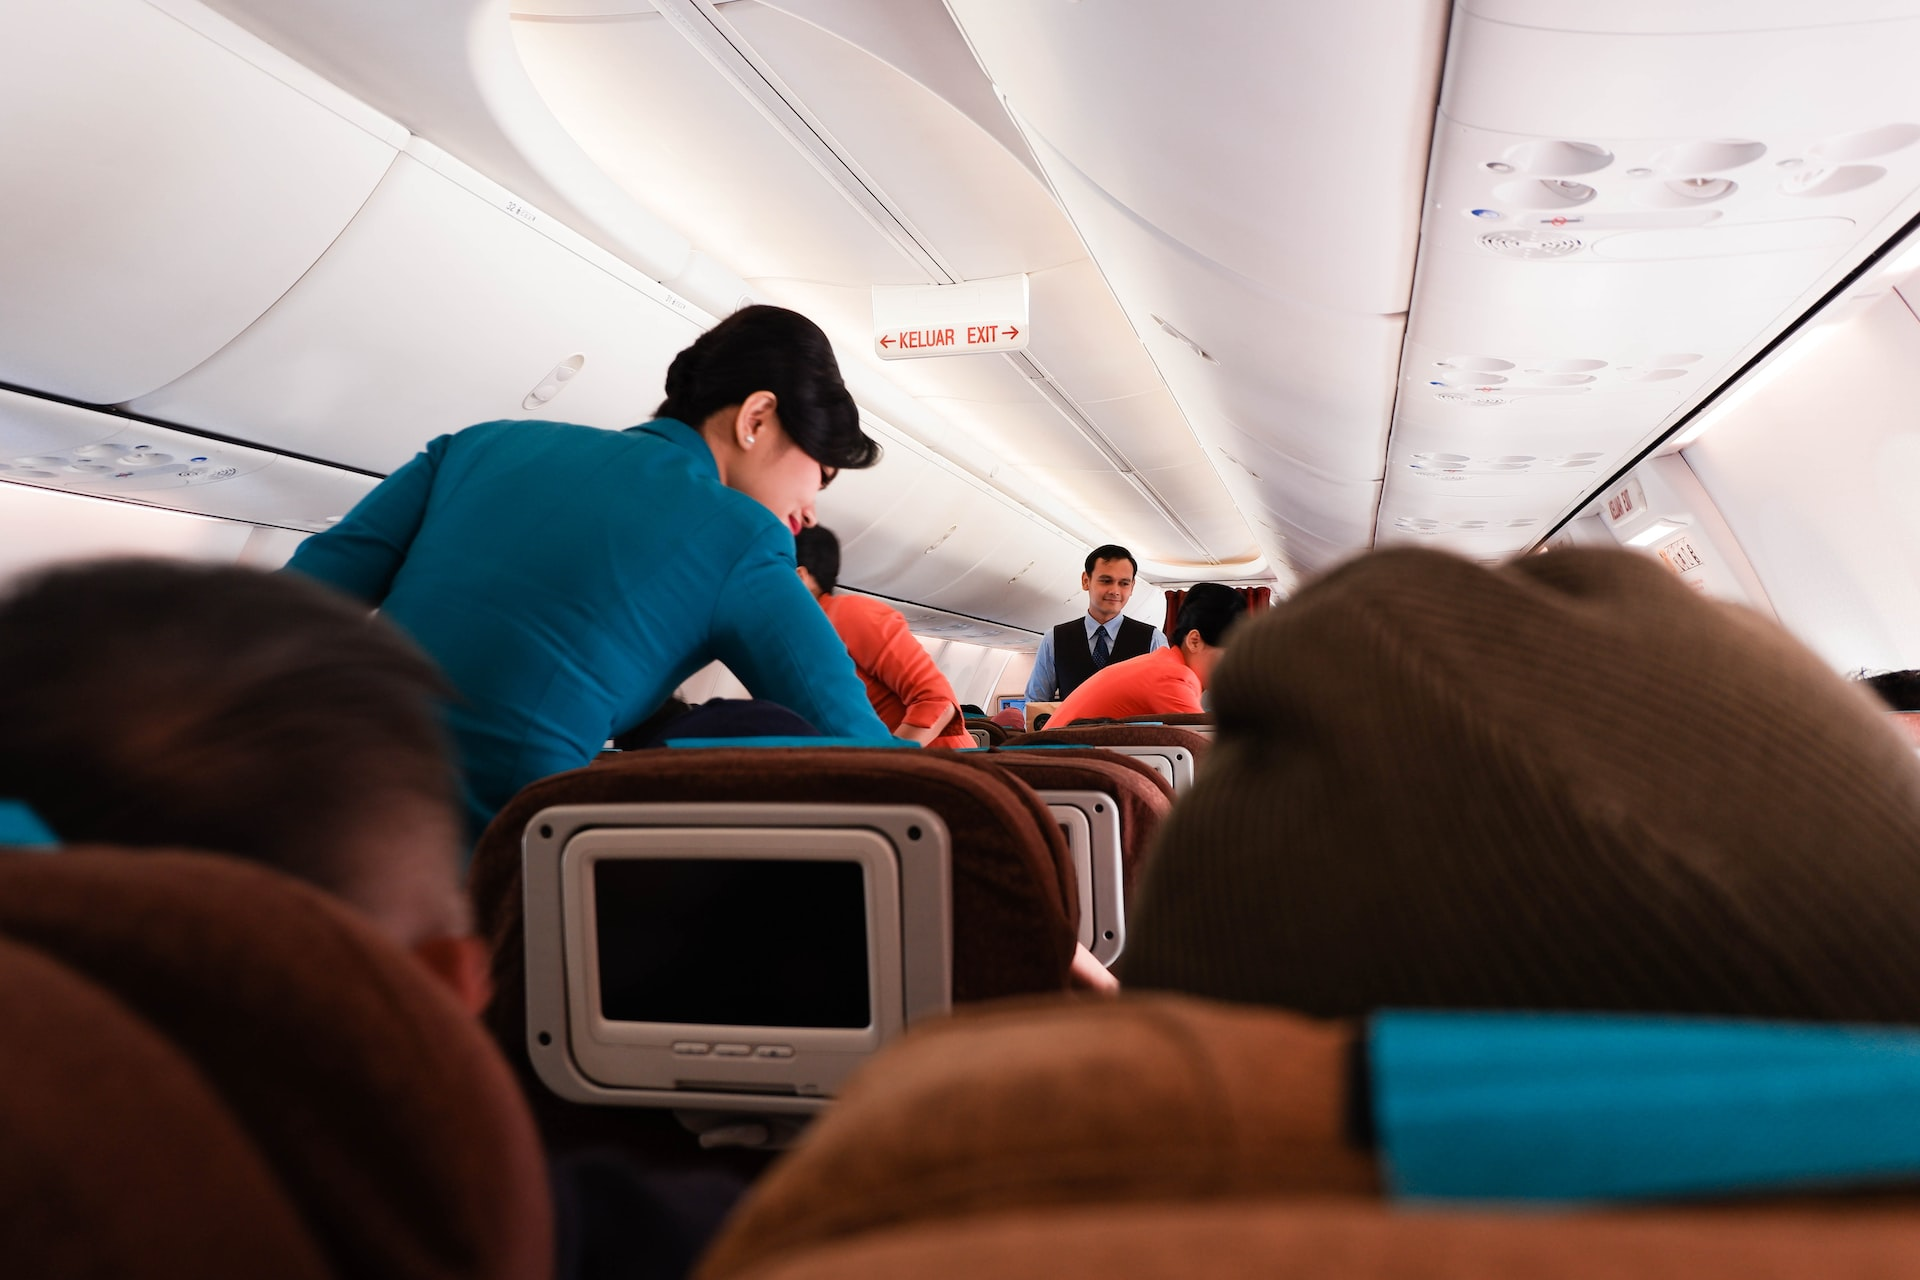 Flight attendants serving customers on board.